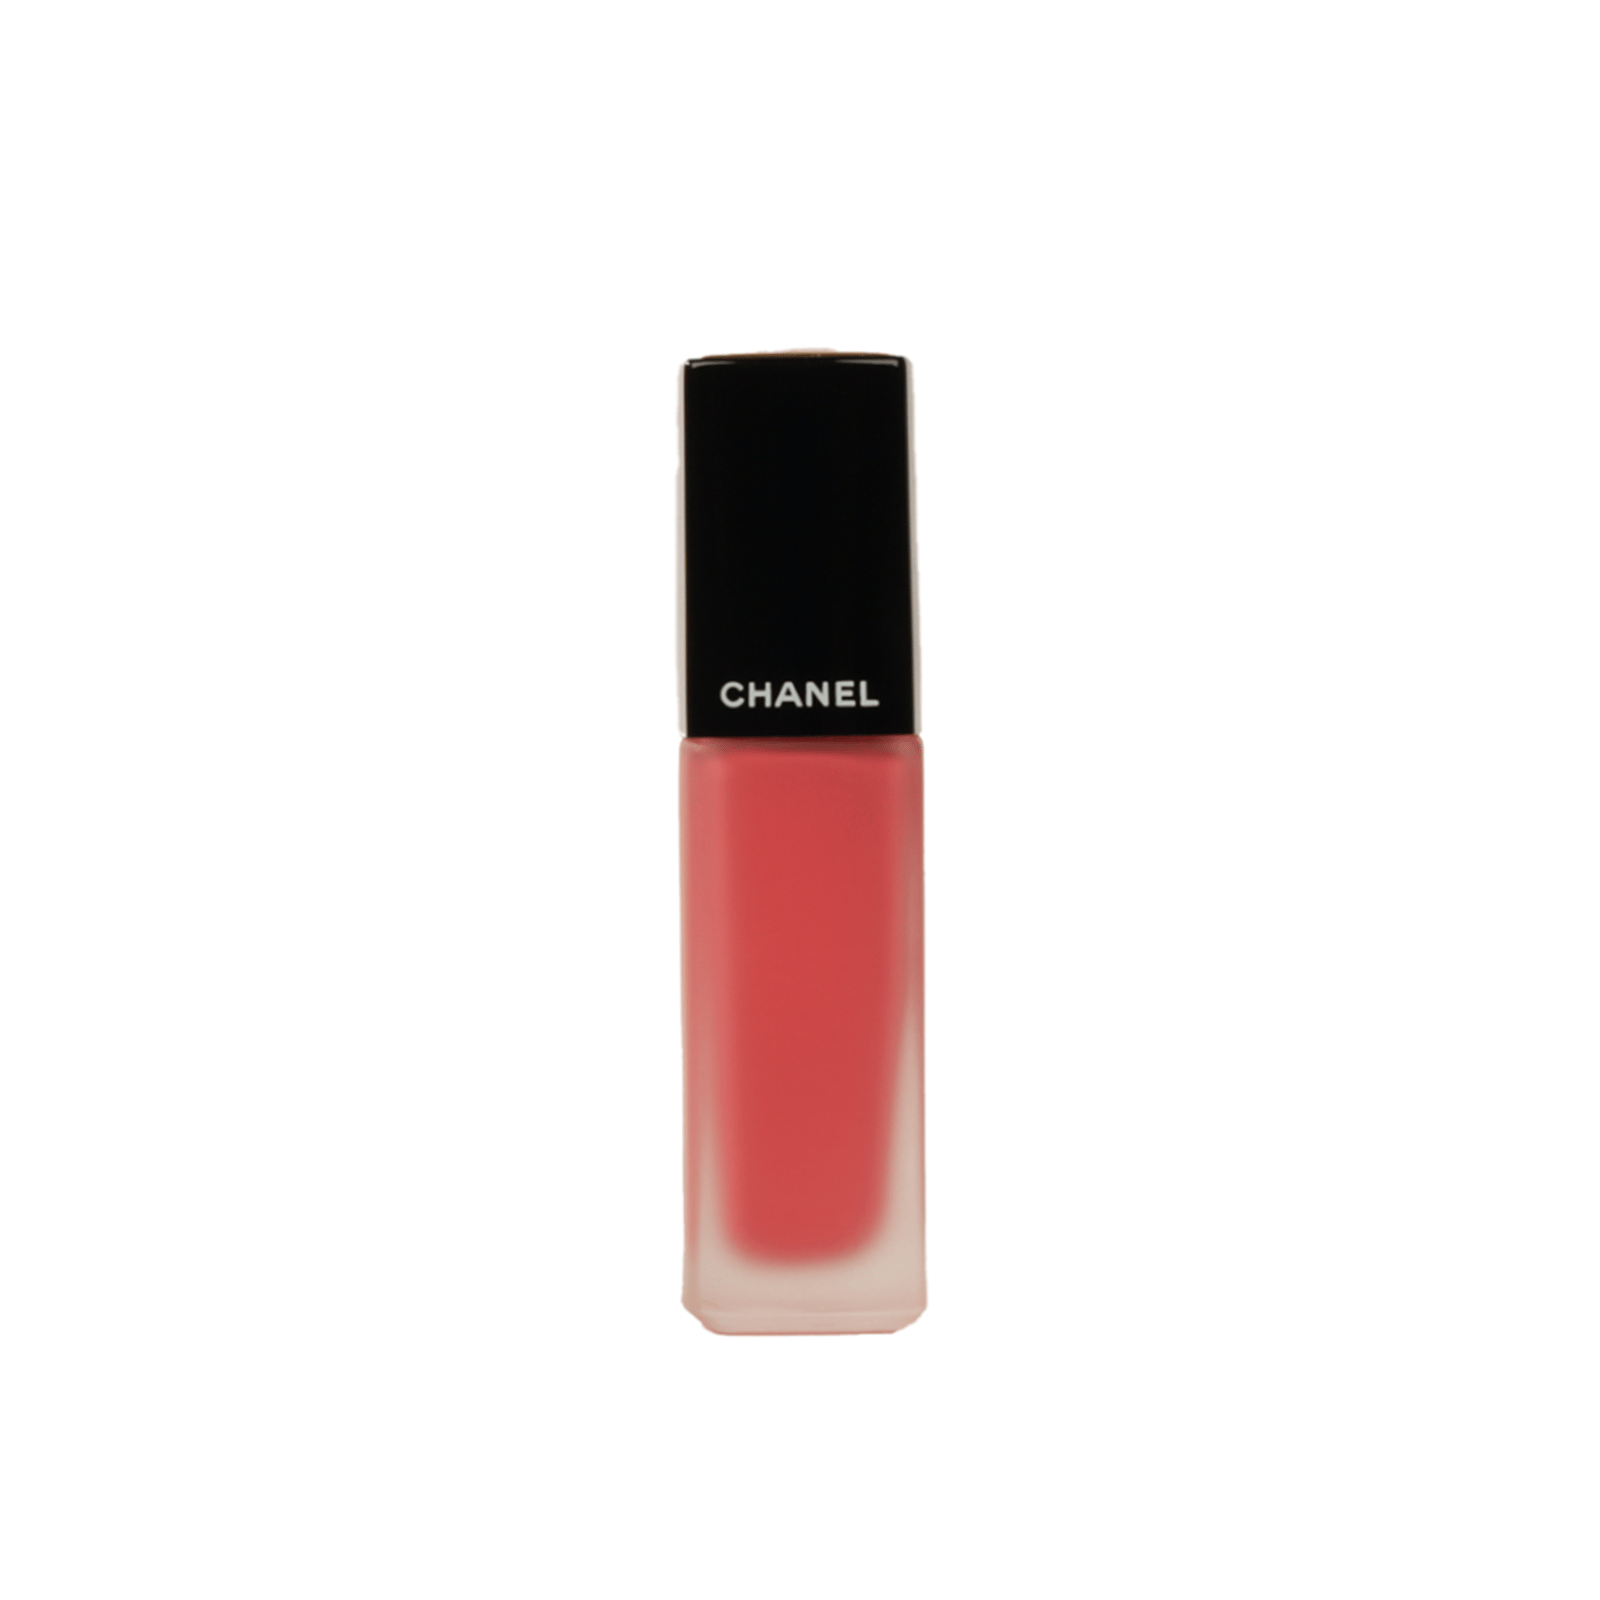 CHANEL Rouge Allure Ink Matte Liquid Lip Colour 142 Créatif 6ml (0.20 fl oz)